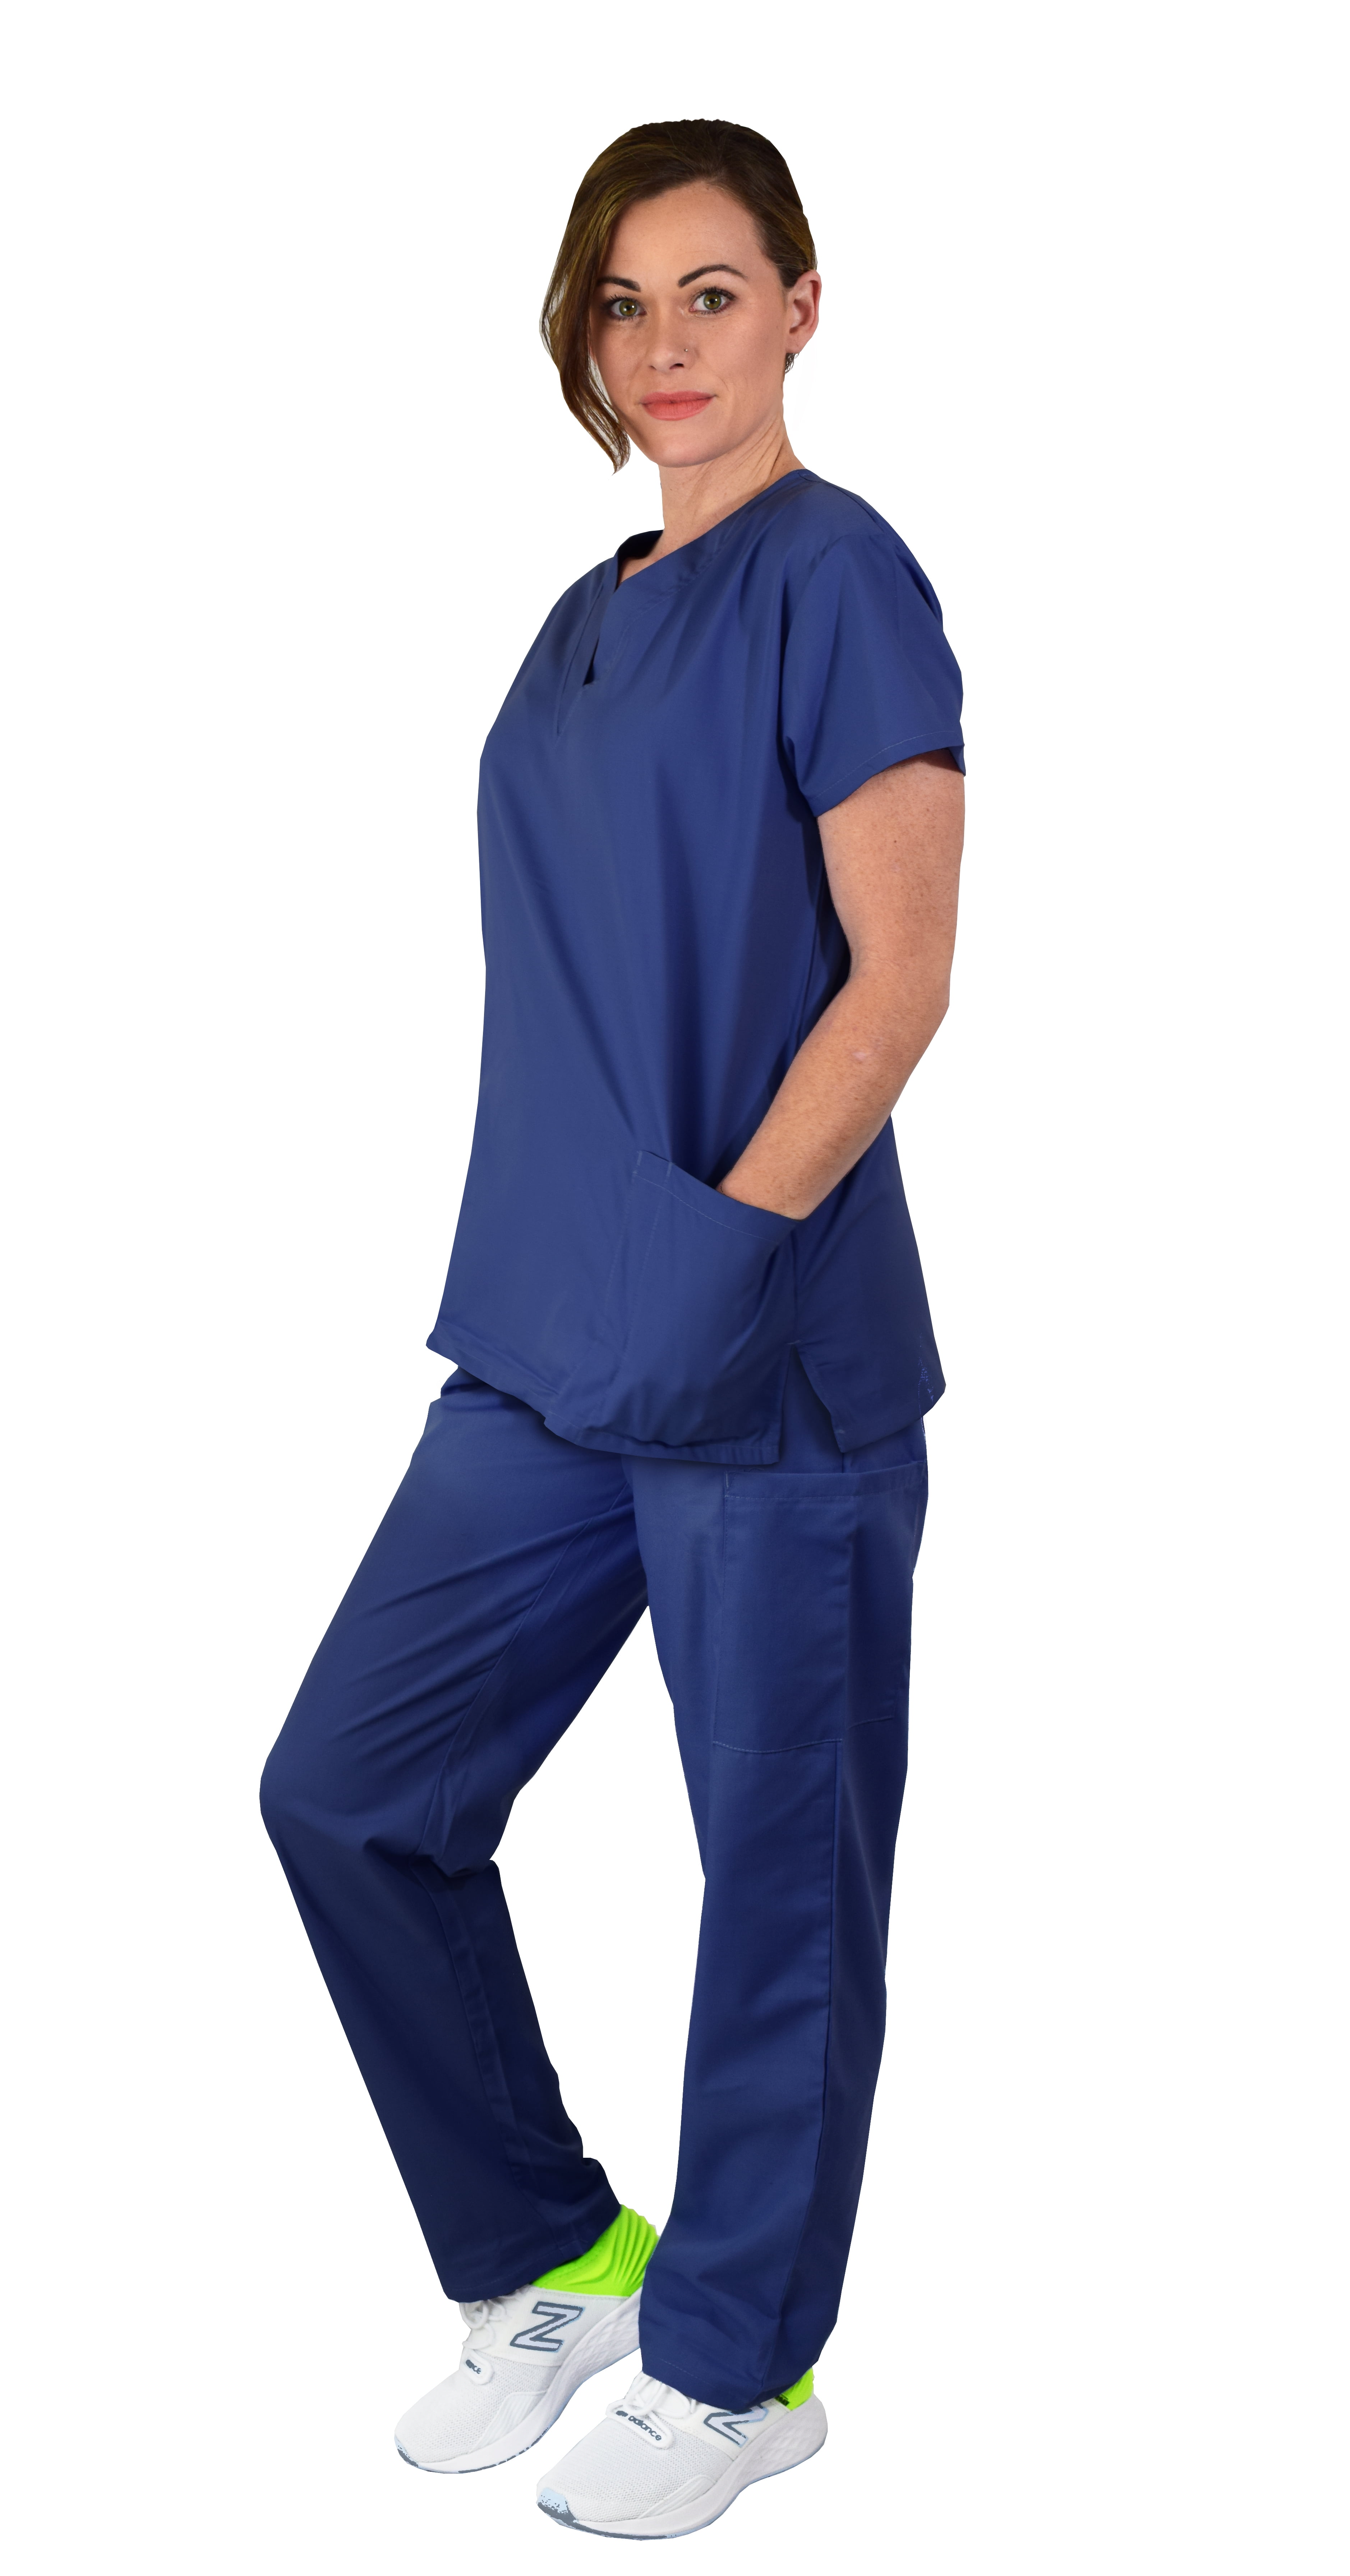 Mens Scrub Set Doctor Nurse Hospital Medical Uniform V-Neck Tops with Long Pants